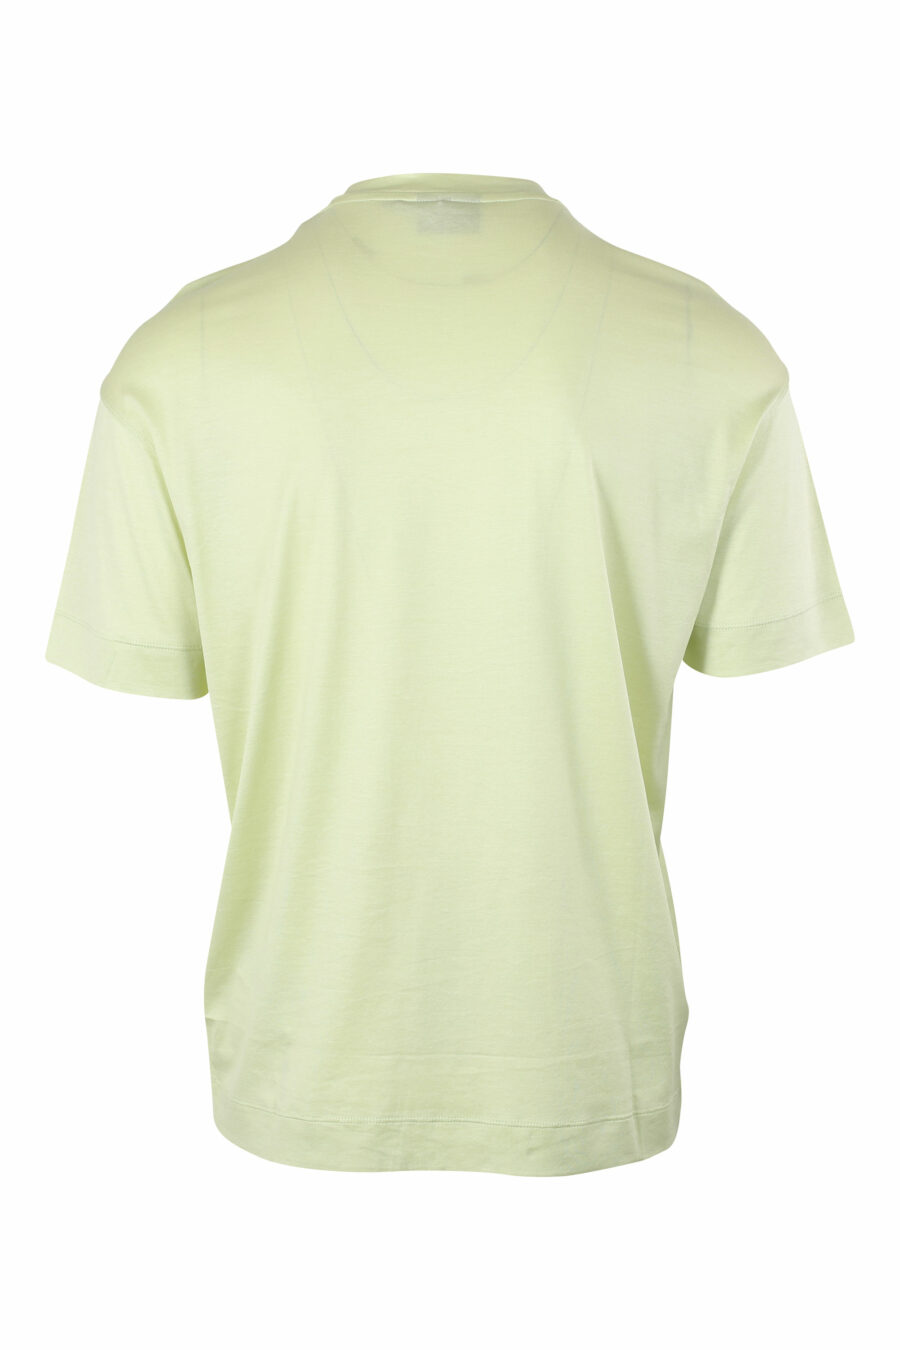 T-shirt verde com maxilogo centrado - IMG 9630